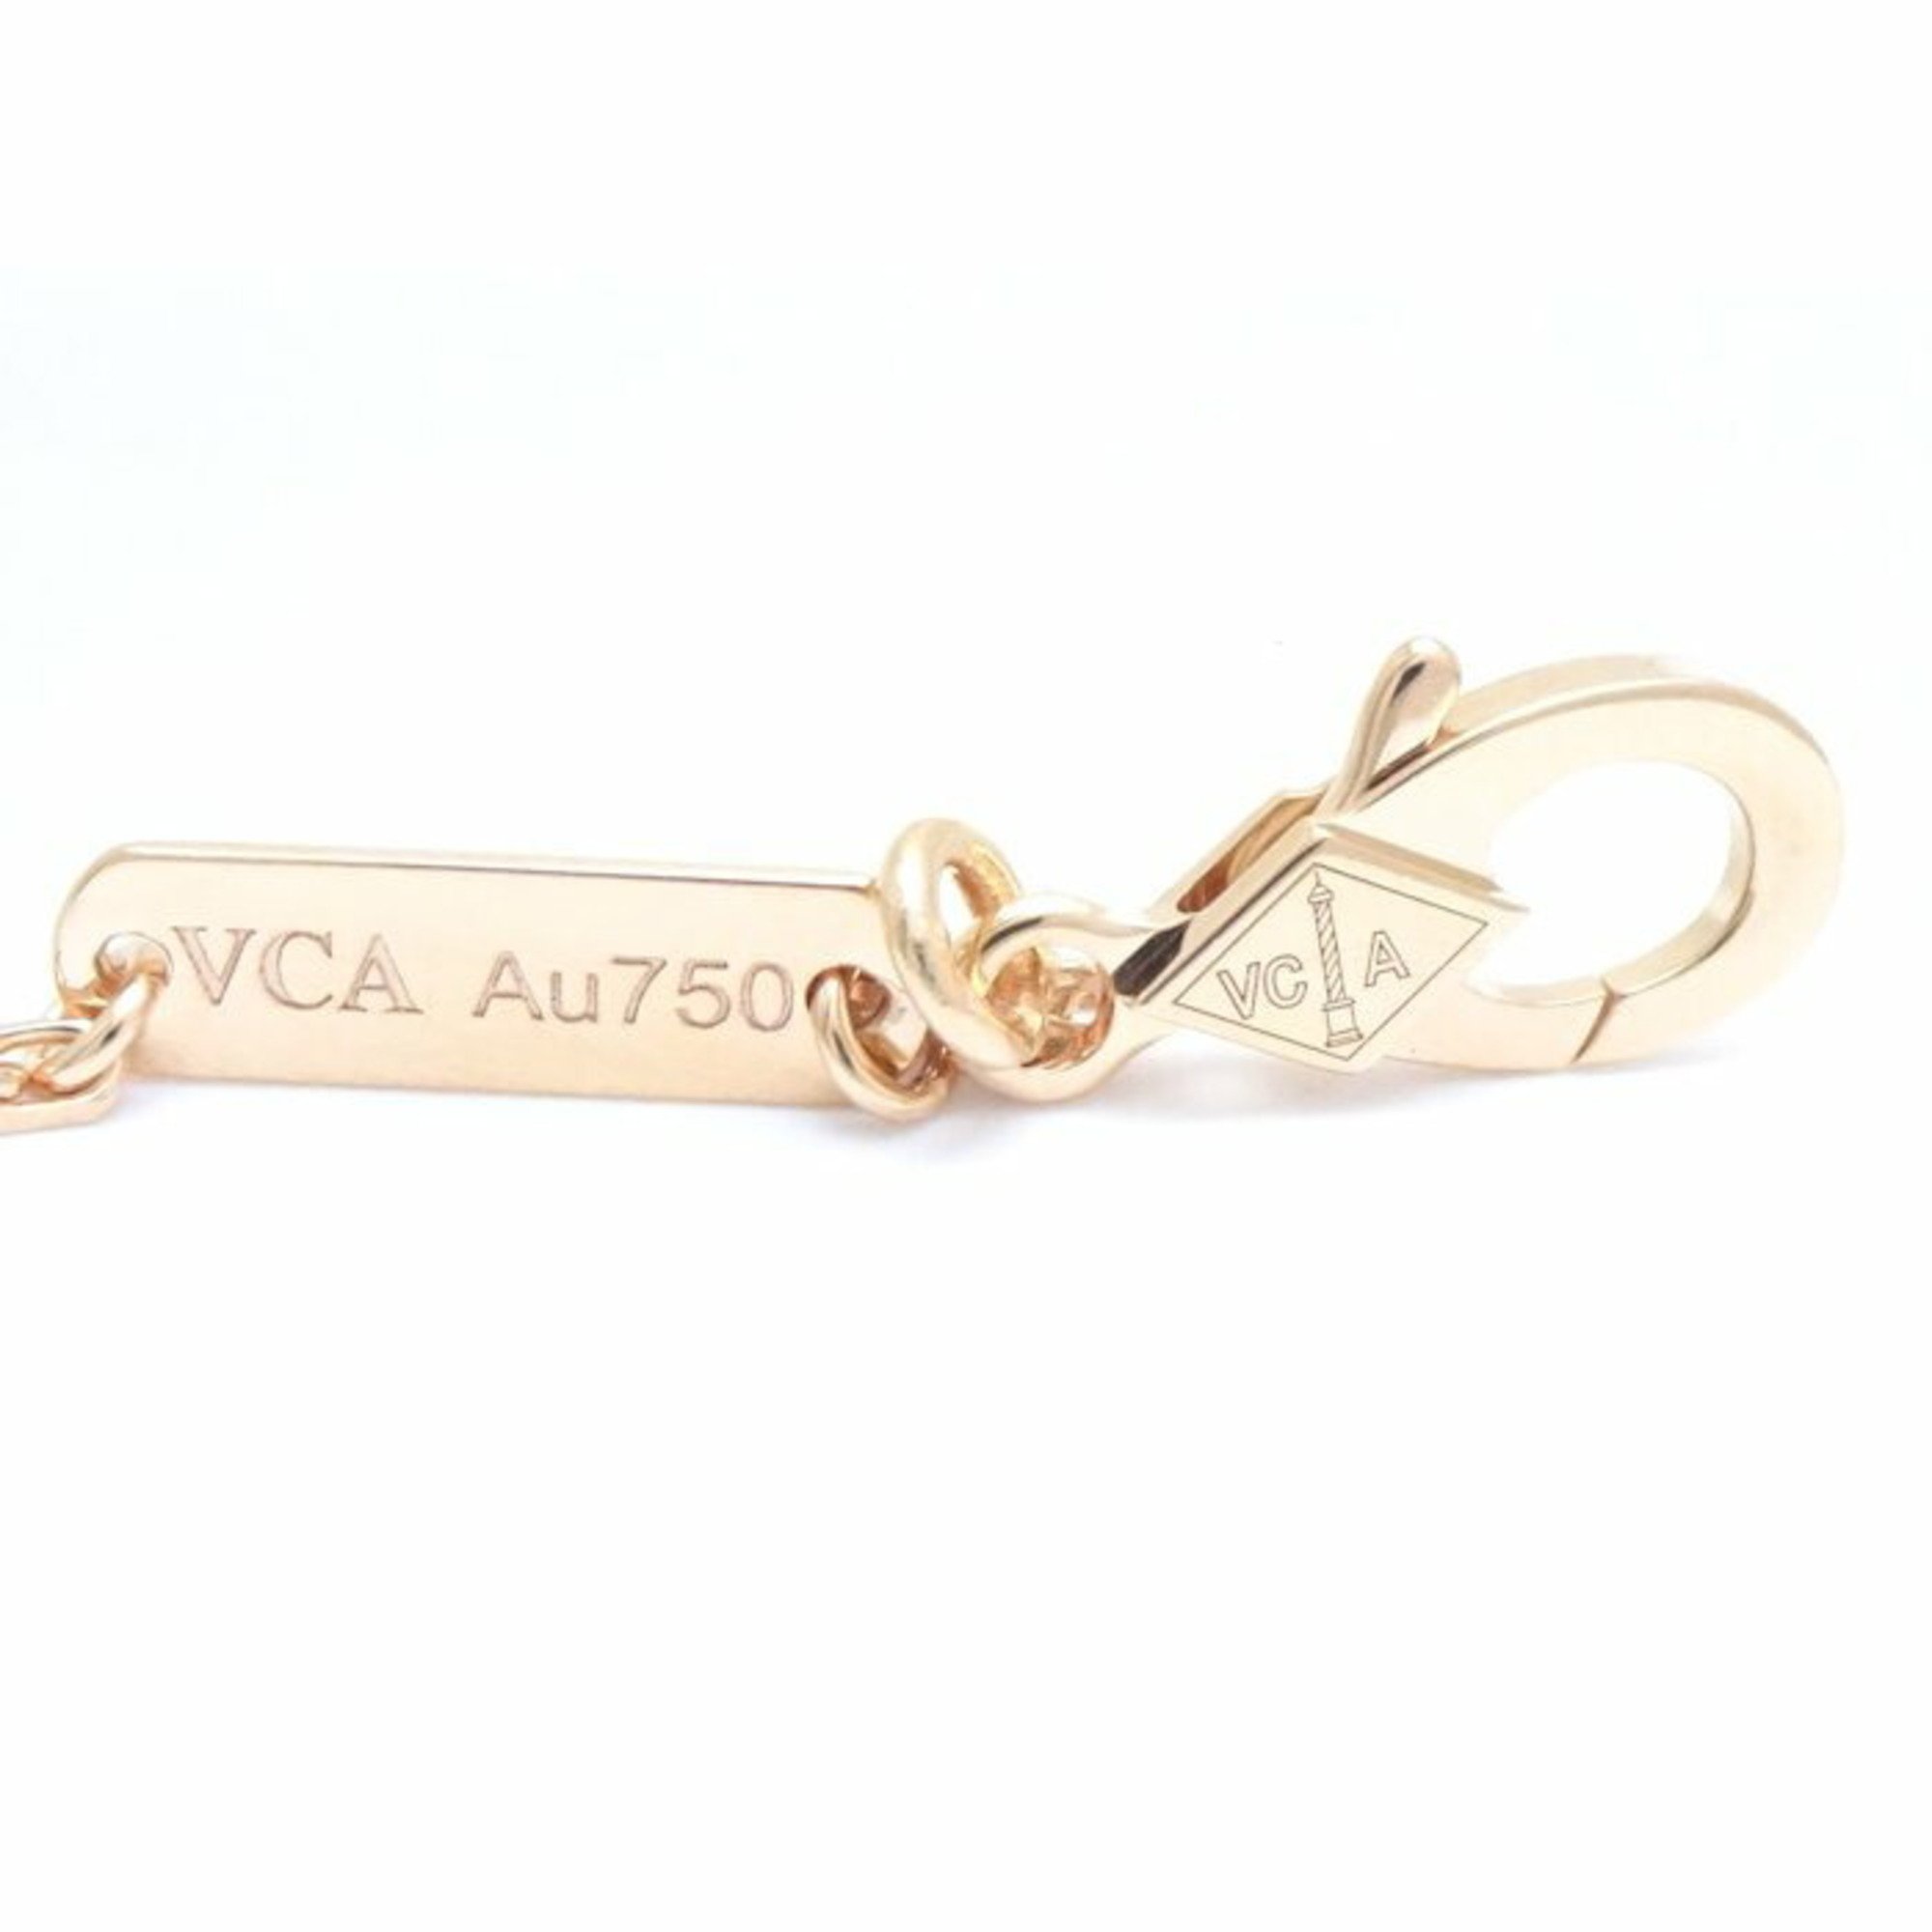 Van Cleef & Arpels Vintage Alhambra Necklace Diamond VCARP2R300 K18PG Pink Gold 290491